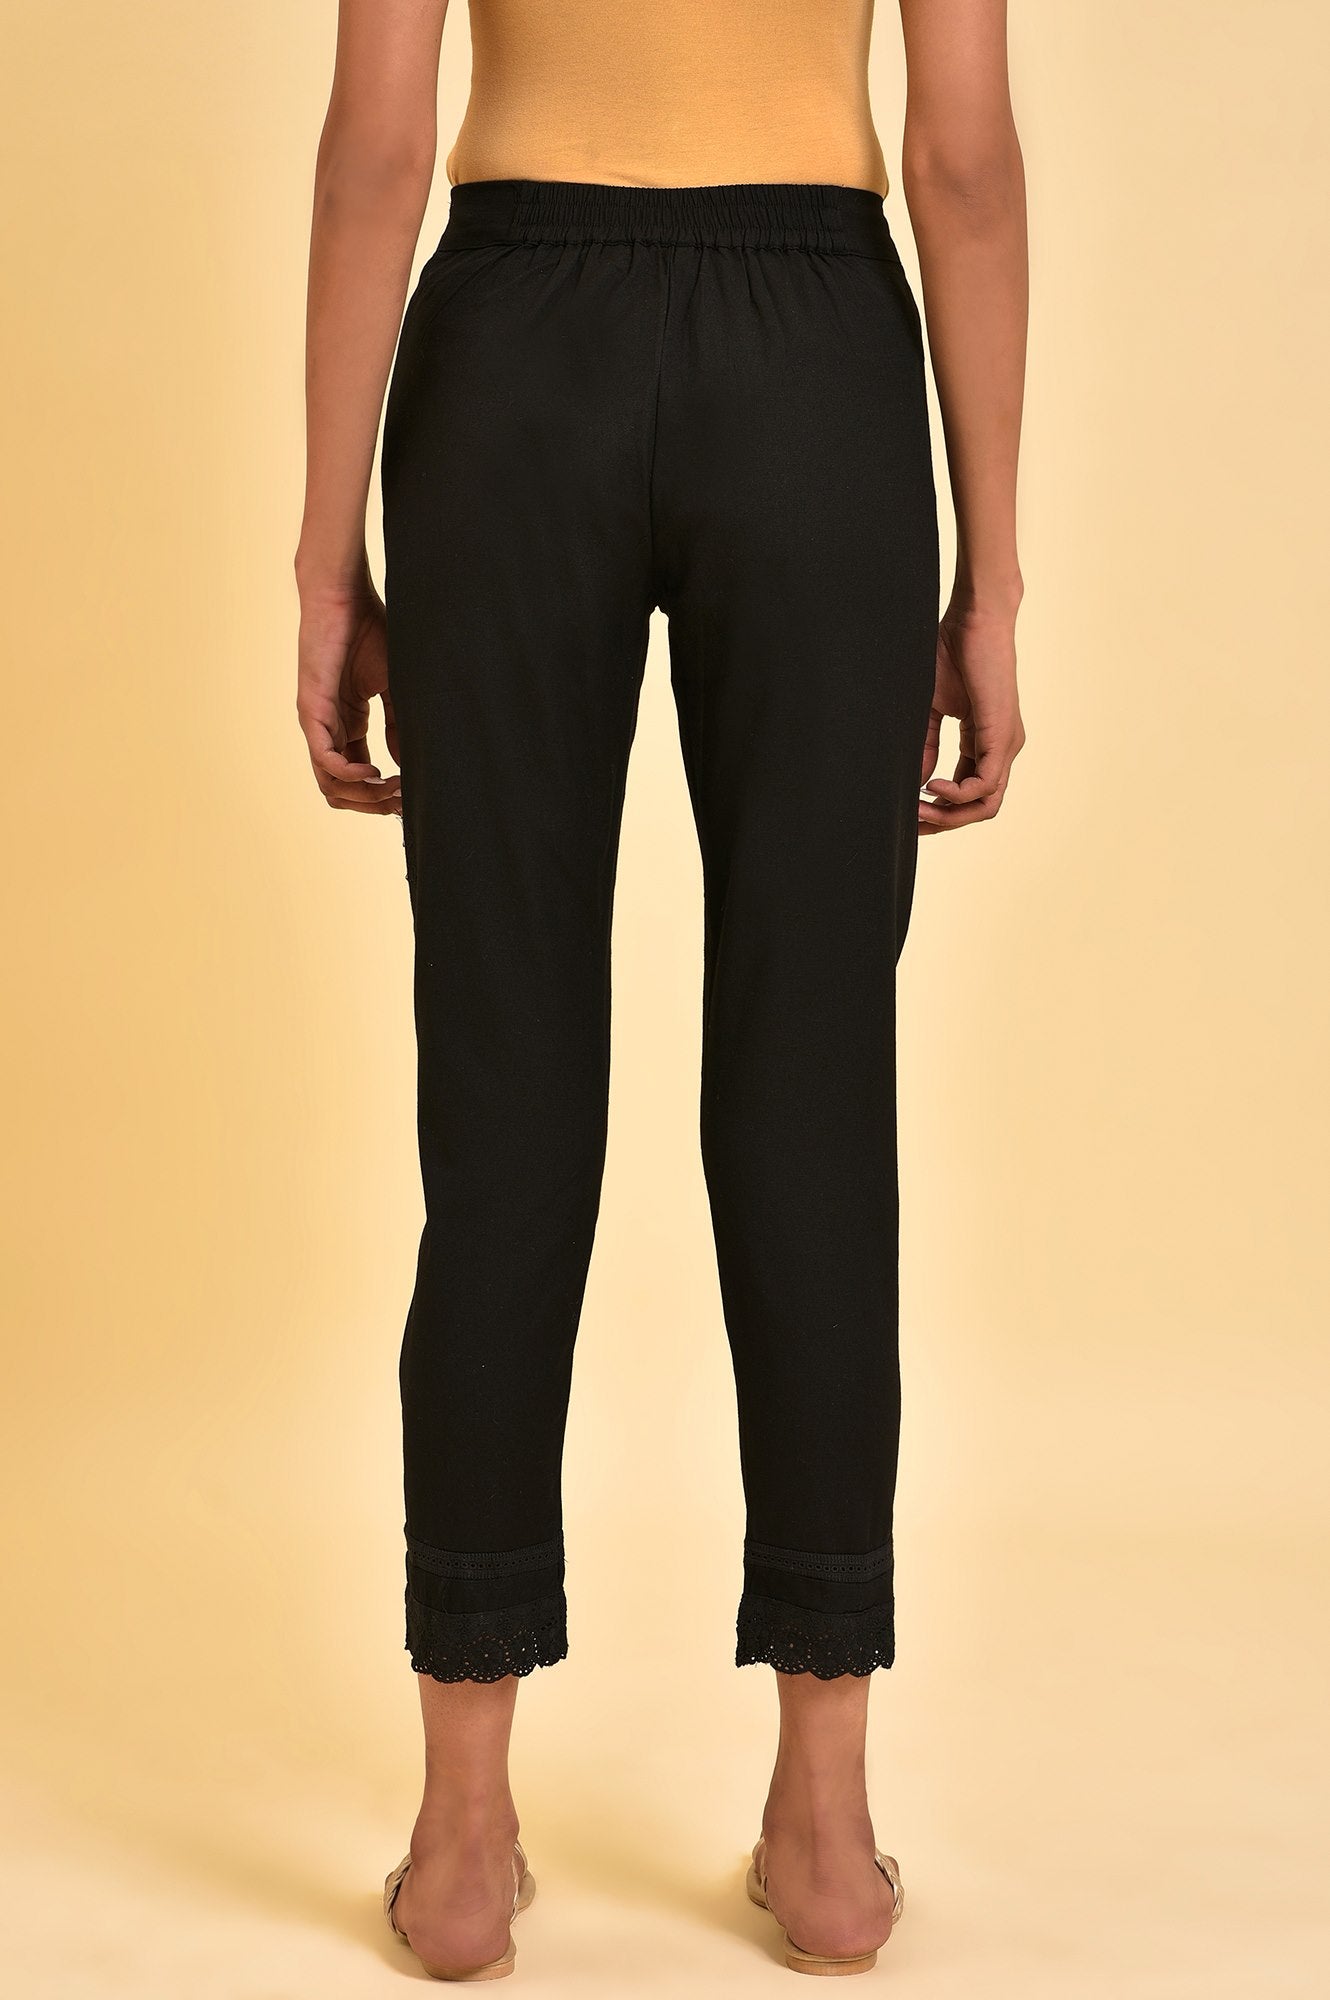 Black Solid Slim Pants